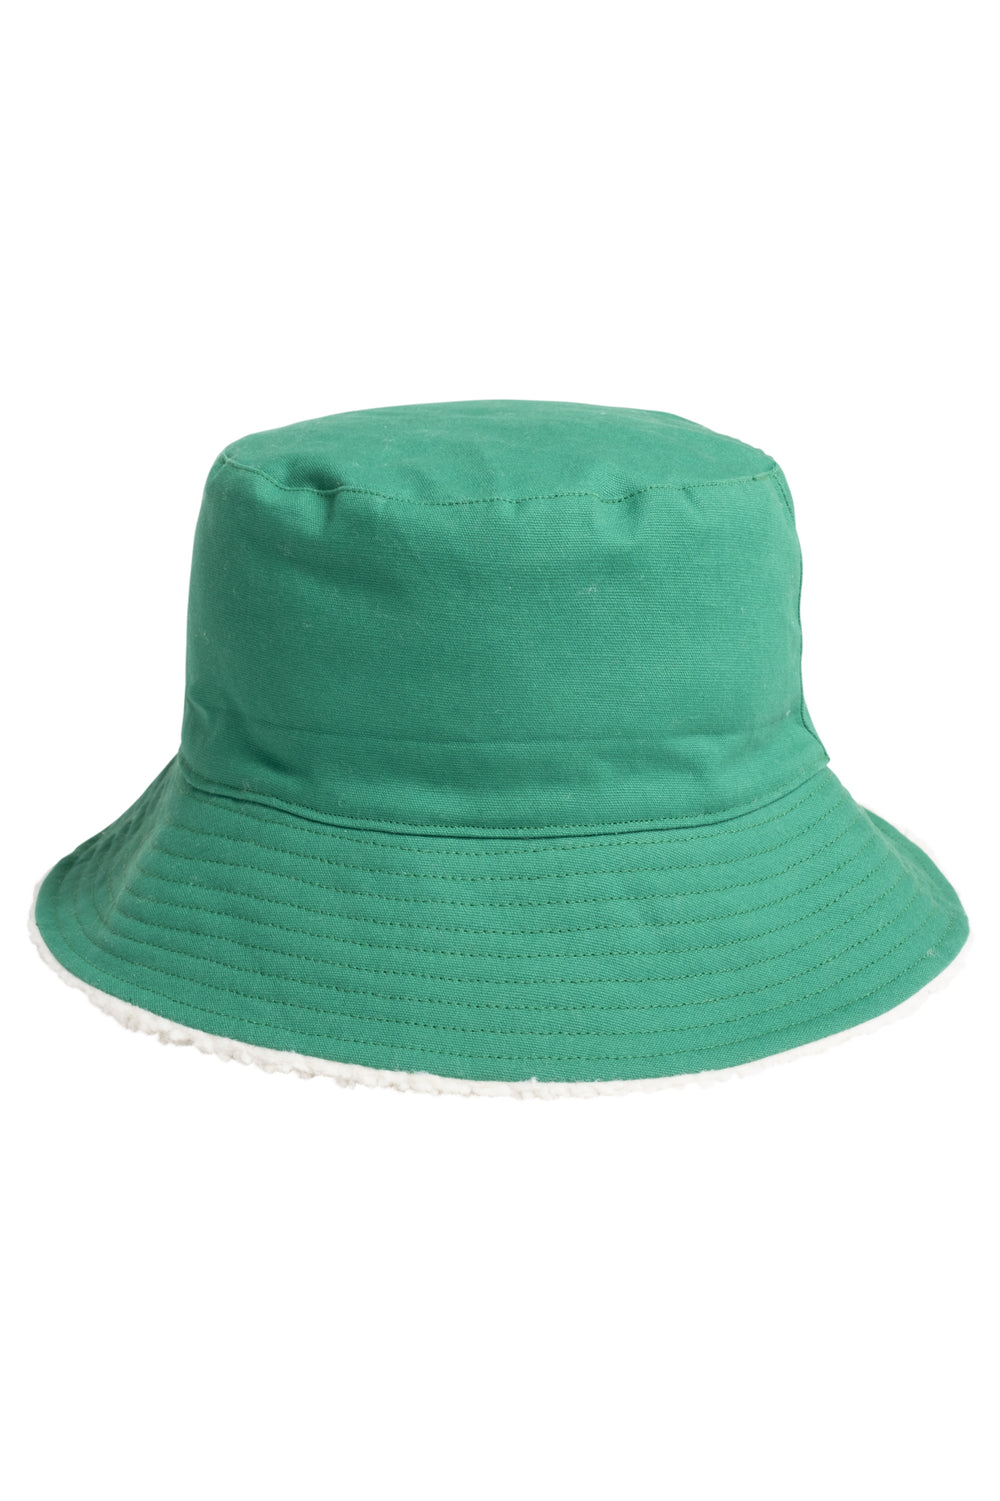 Black Sherpa Lined Bucket Hat